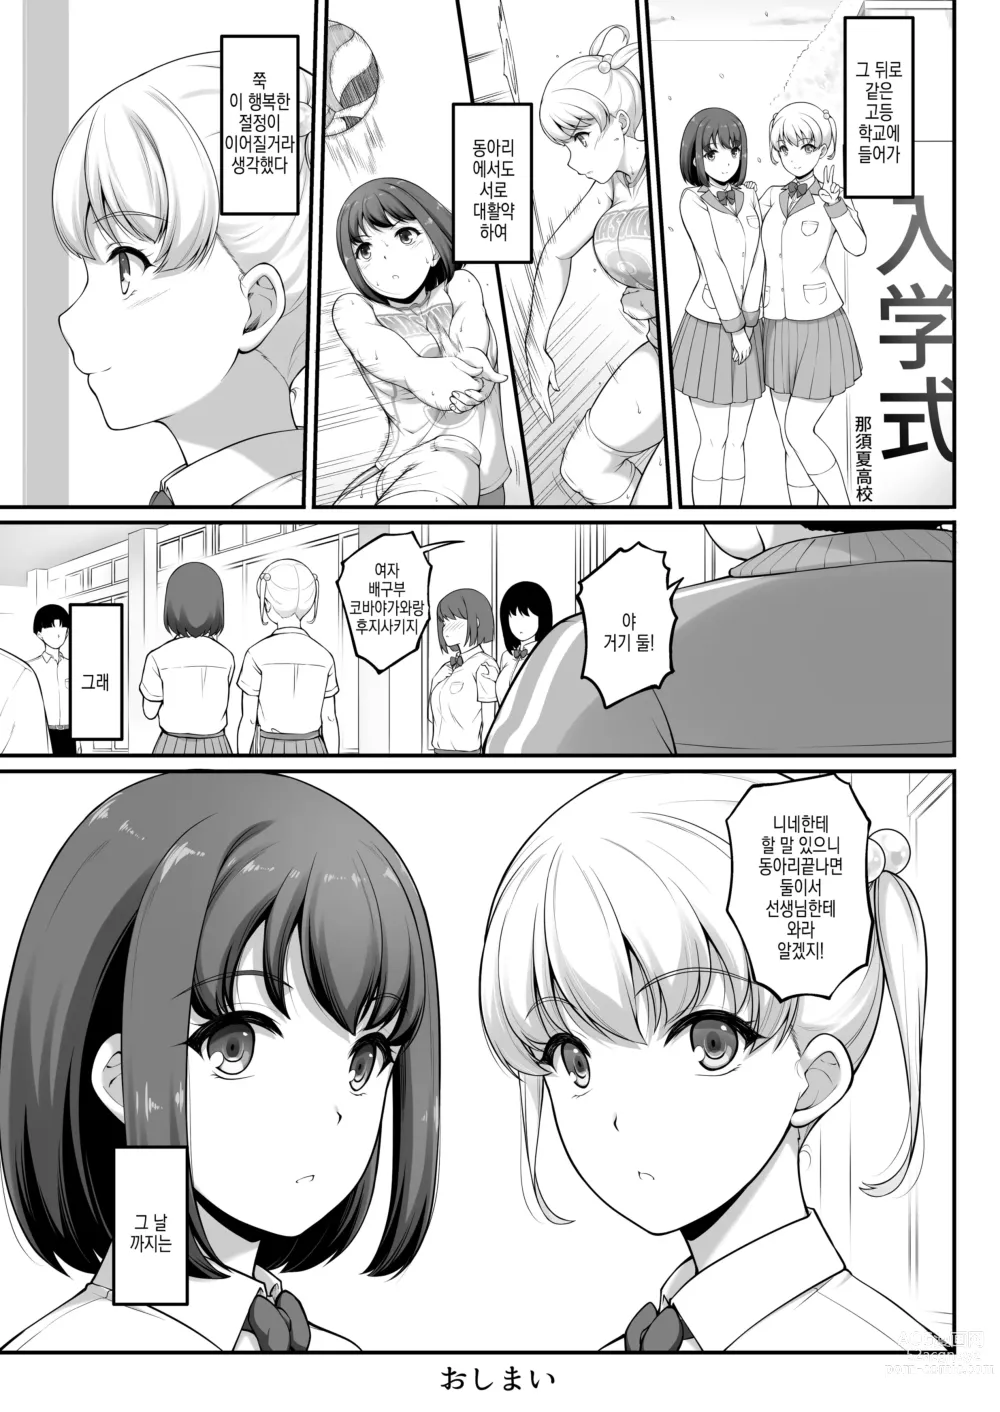 Page 85 of doujinshi 여자 배구부 JK, 네토라레 당하다 2